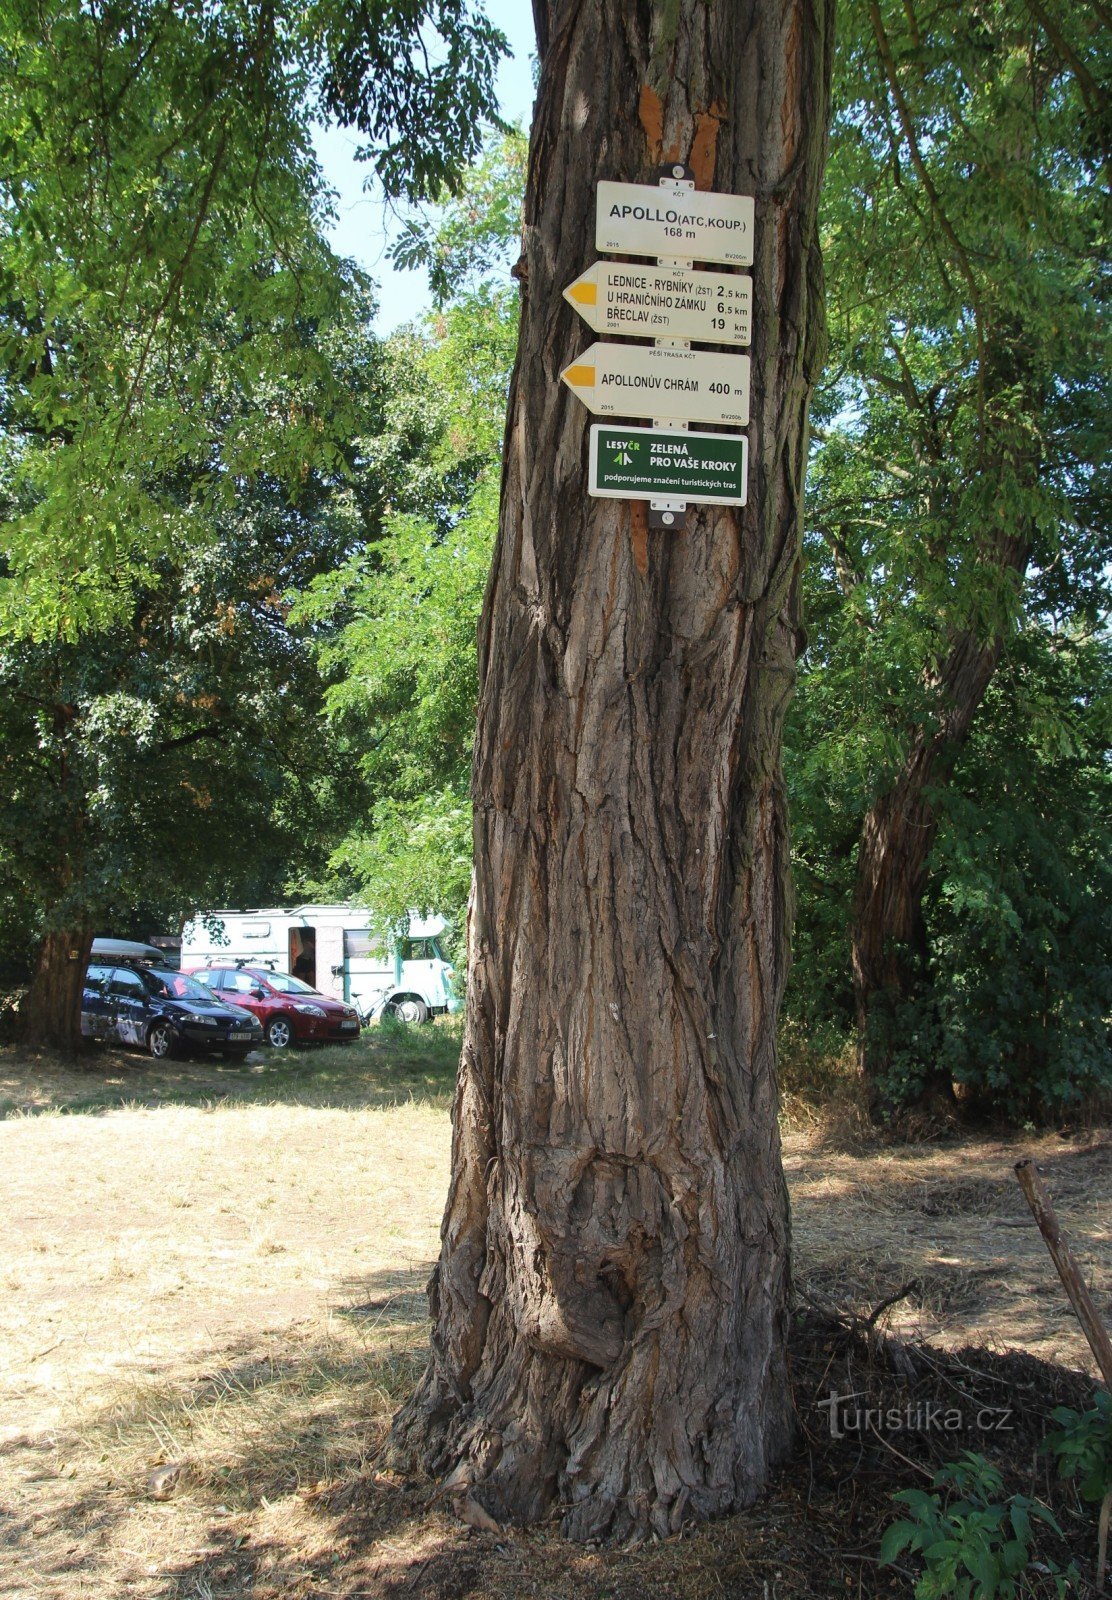 Intersecția turistică Apollo este situată la marginea parcării